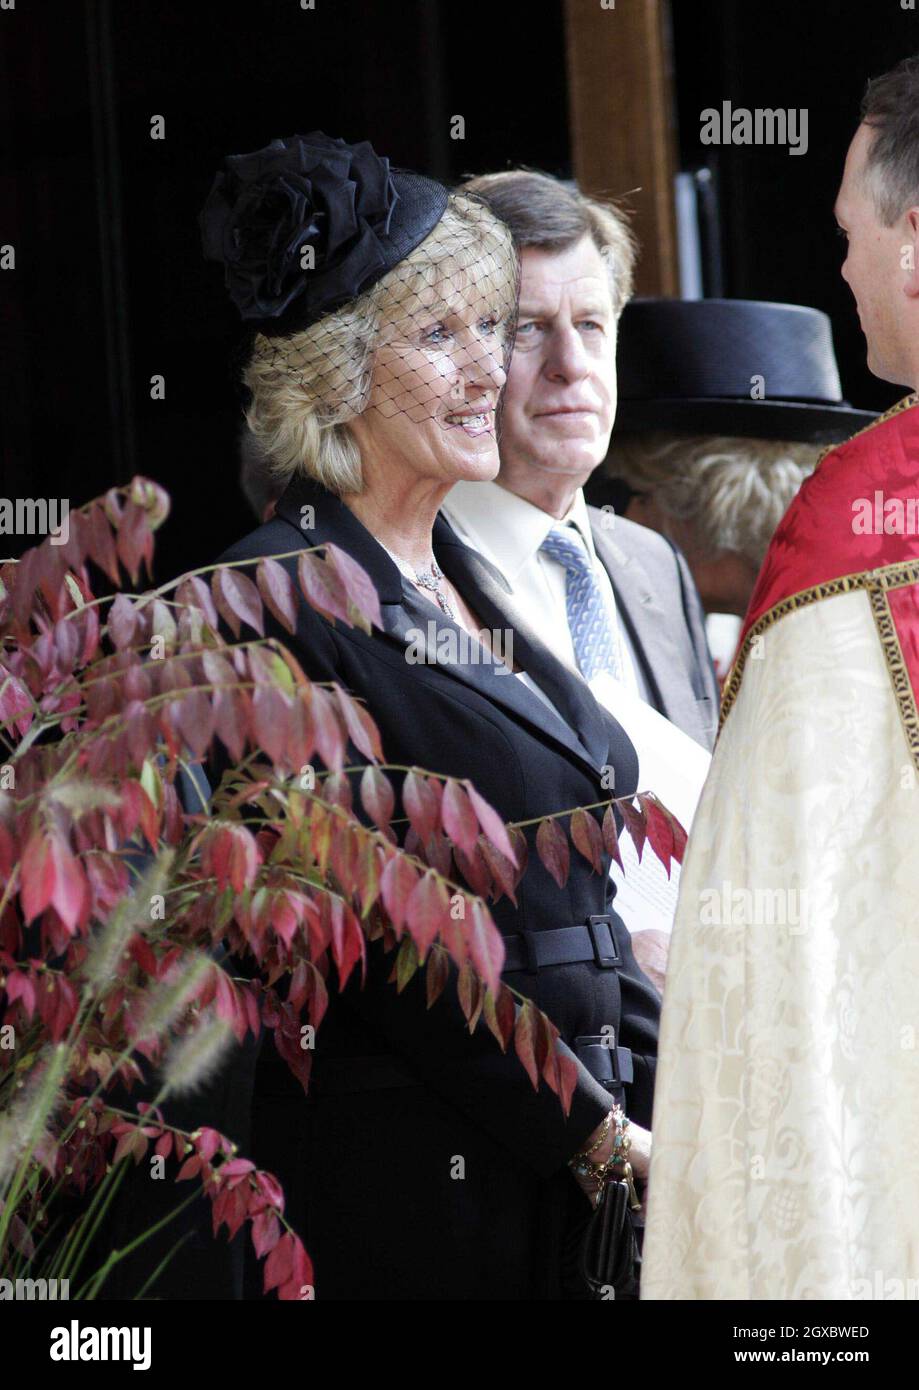 Annabel Elliott, Schwester von Camilla, kommt am 11. September 2006 zur Gedenkfeier für ihren Vater, Major Bruce Shand, in die St. Paul's Church in Knightsbridge, London. Anwar Hussein/EMPICS Entertainment Stockfoto